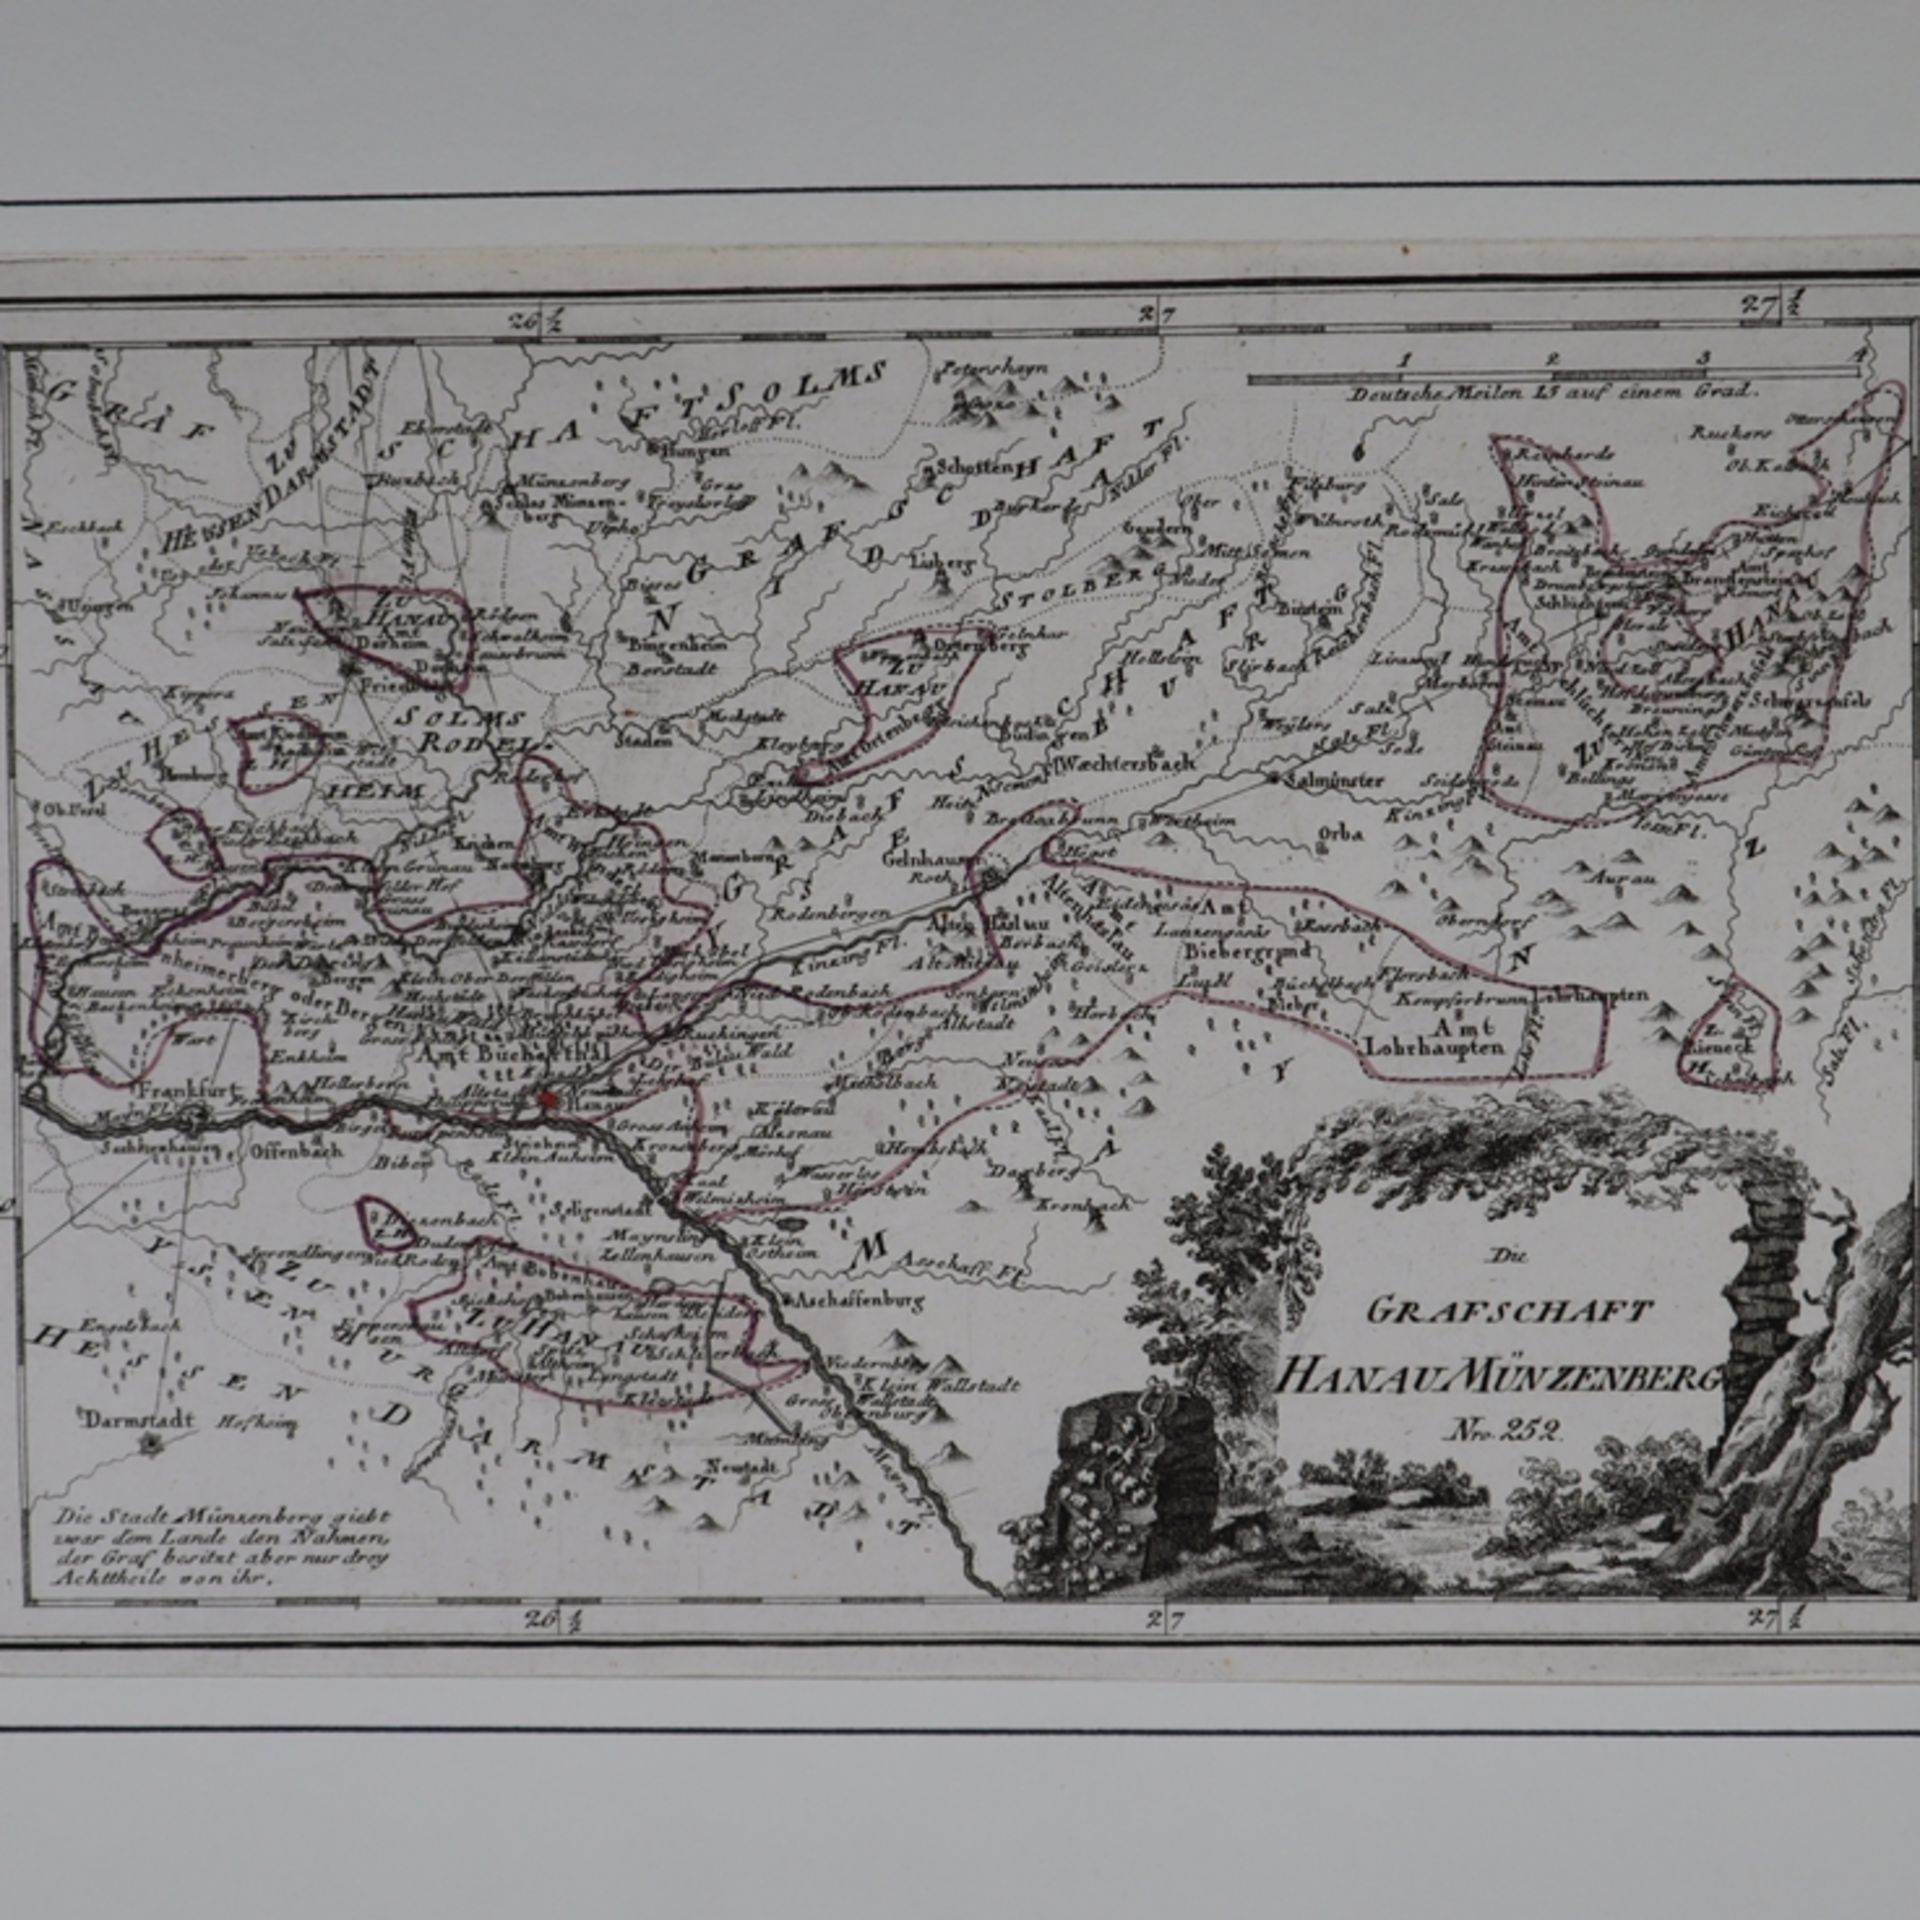 Reilly, Franz Johann Joseph - Kupferstichkarte "Die Grafschaft Hanau Münzenberg - Bild 2 aus 7